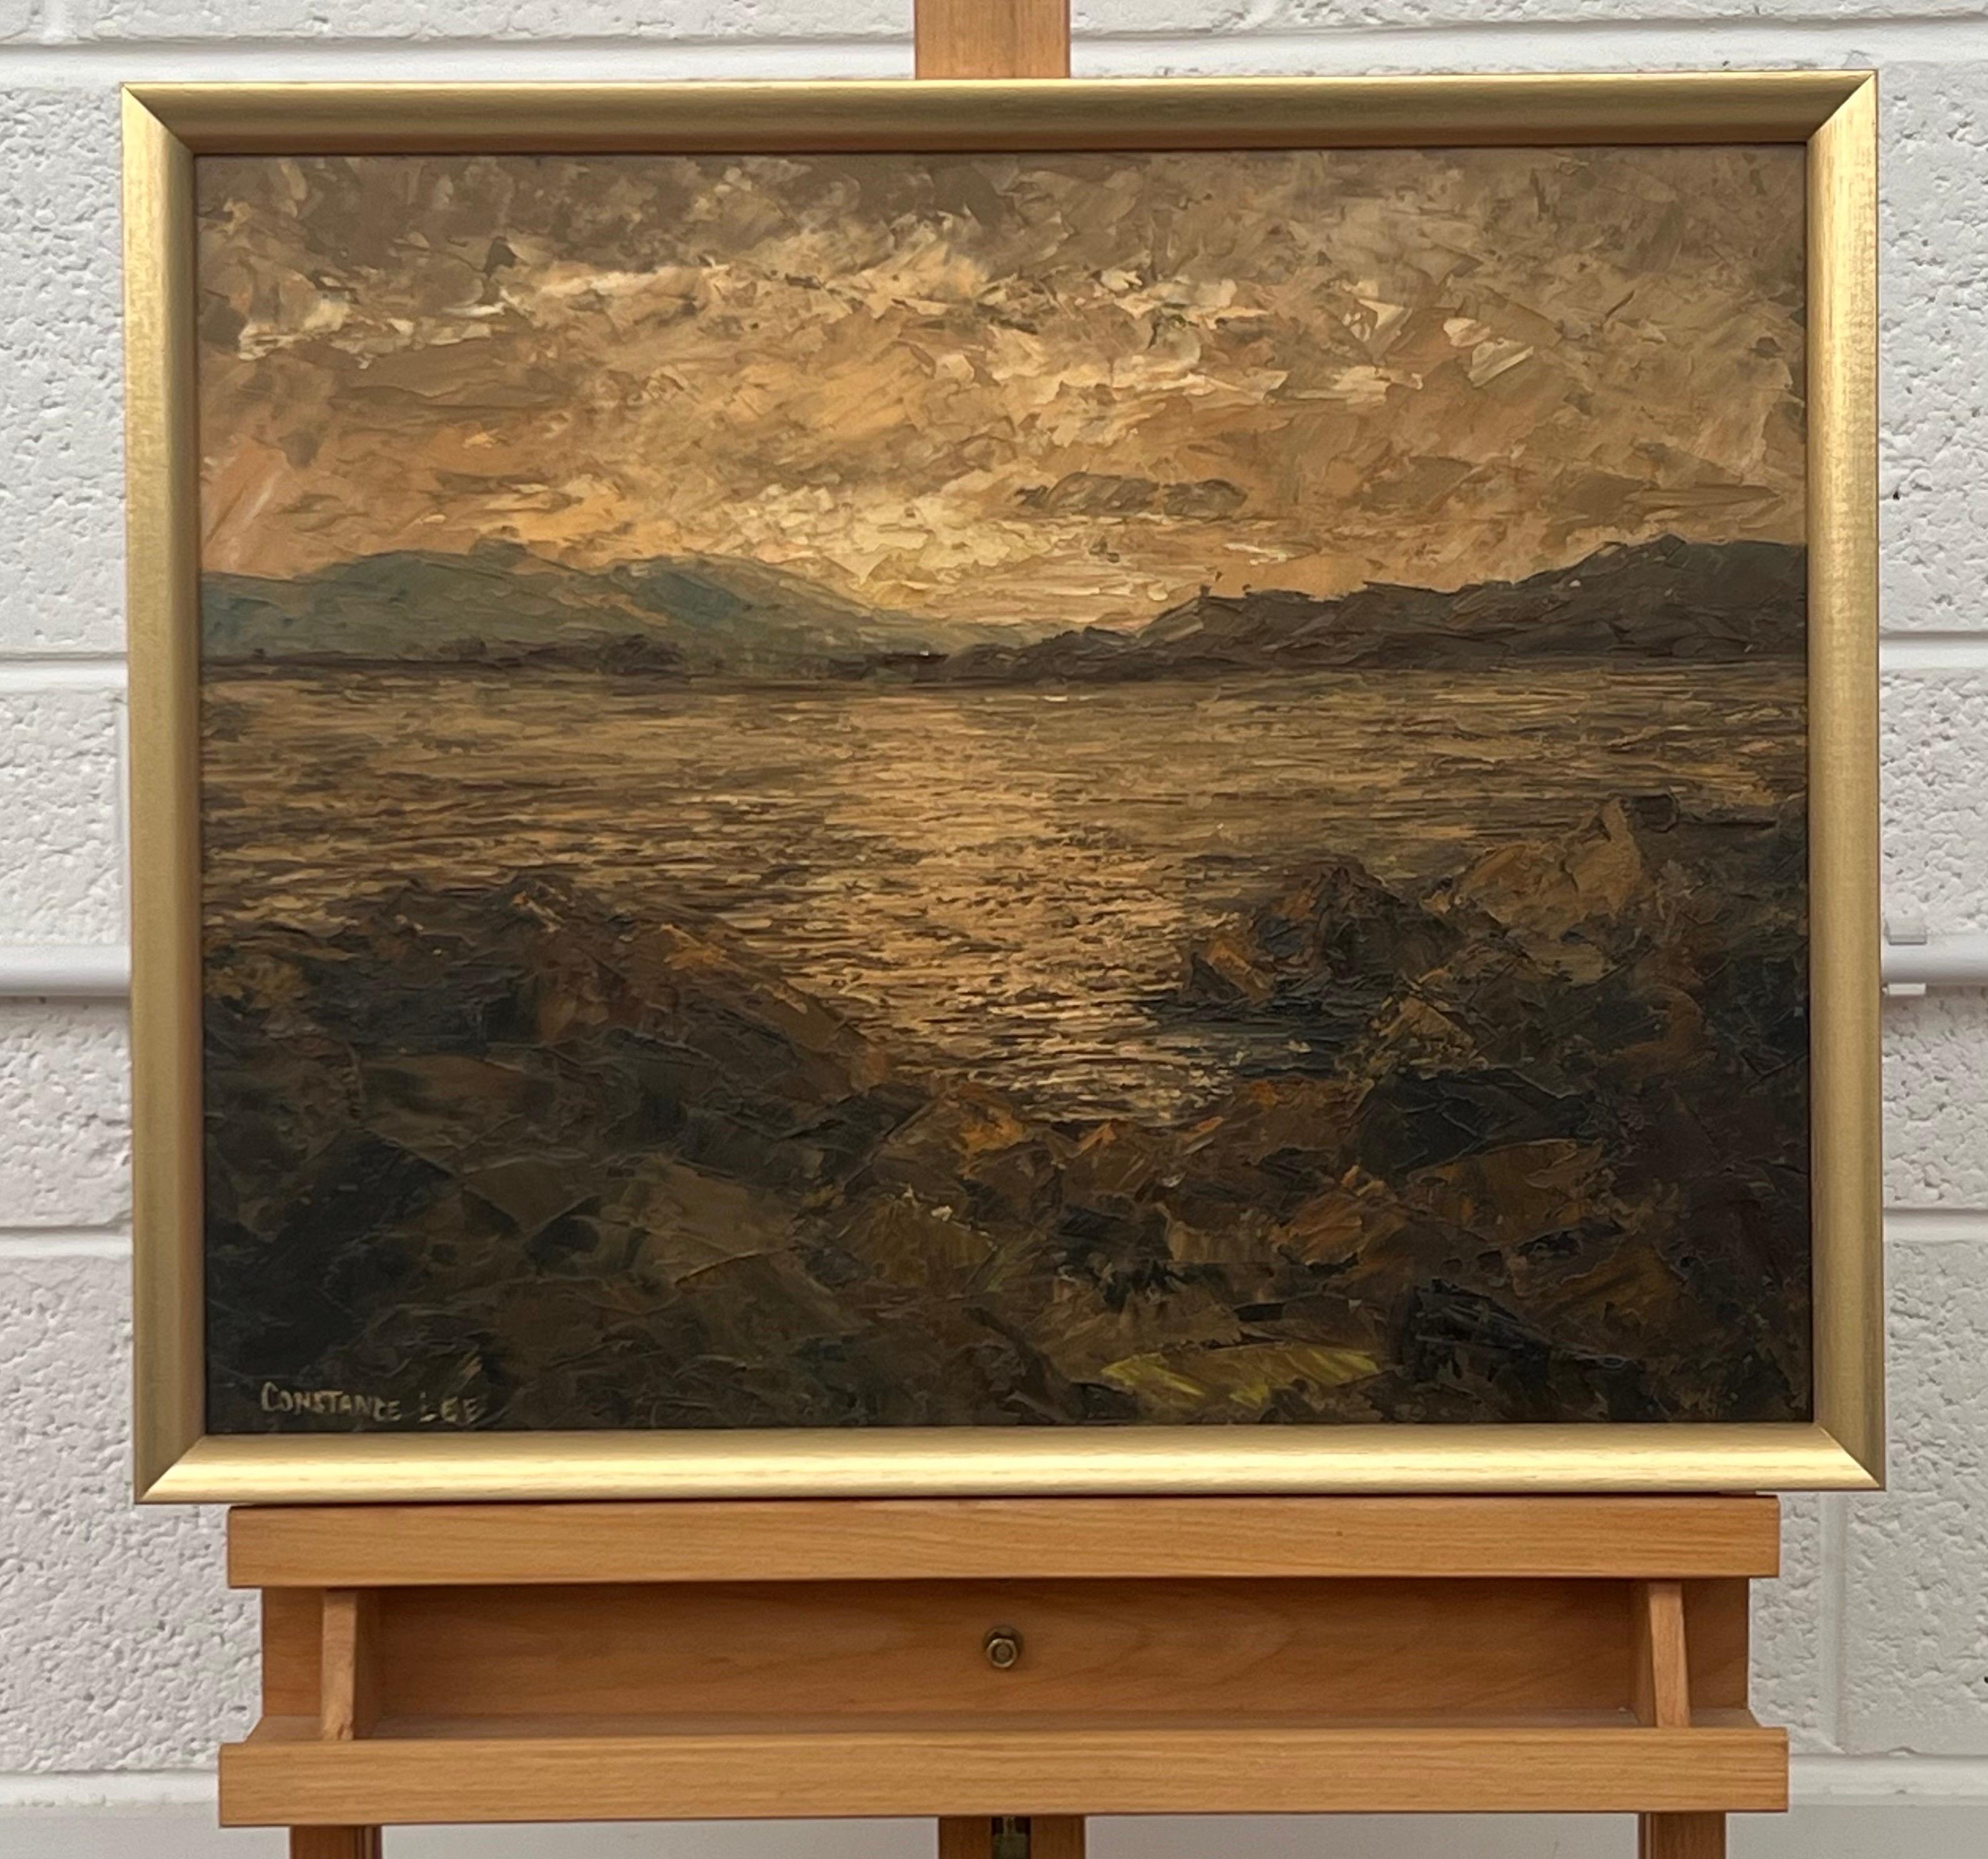 Paysage de mer atmosphérique Coucher de soleil Peinture à l'huile à l'empâtement par un artiste du 20e siècle - Impressionnisme Painting par Constance Lee